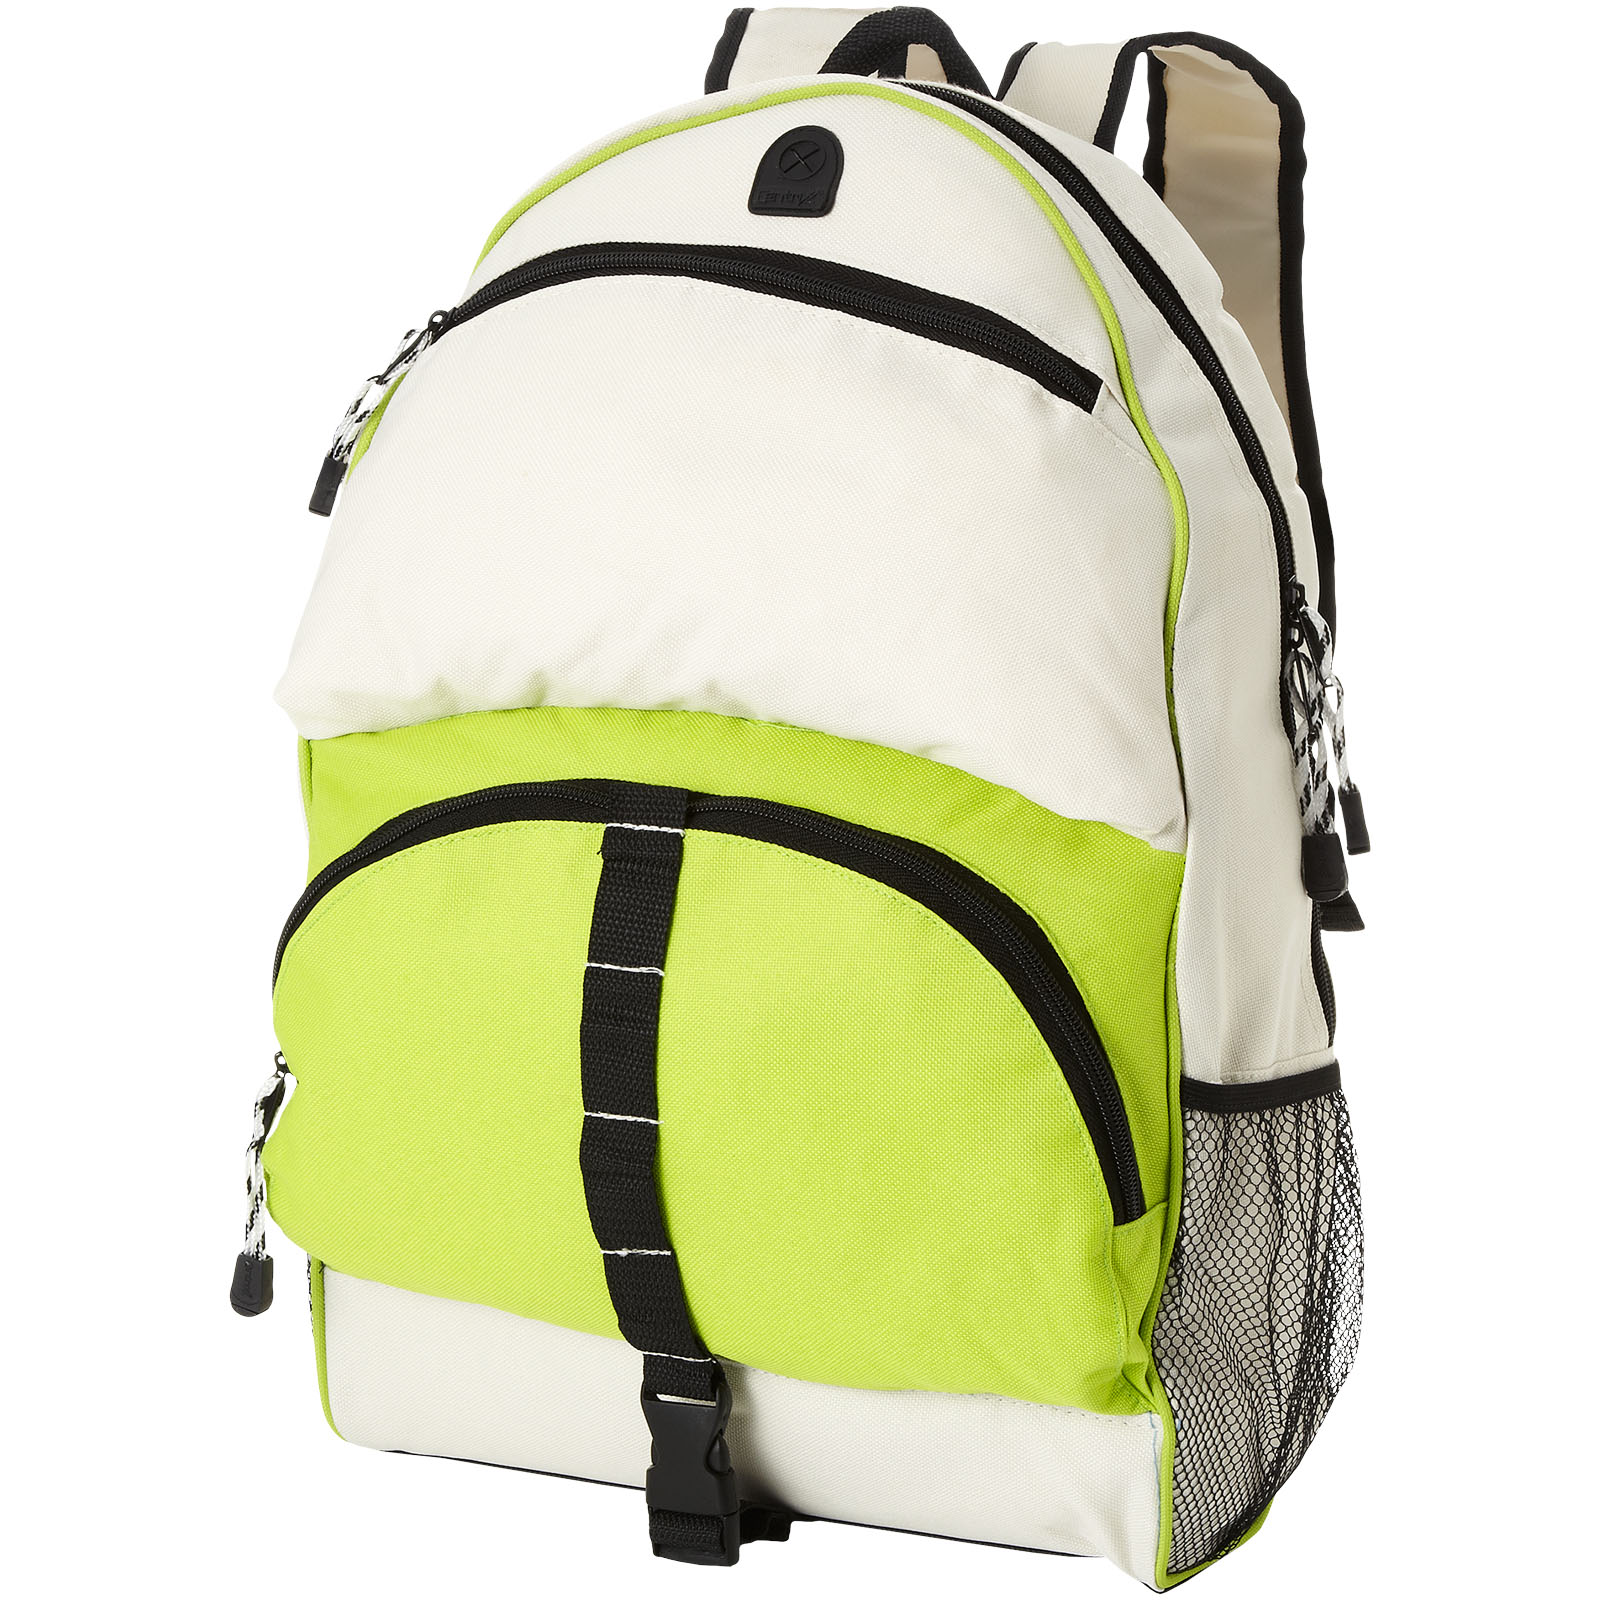 Advertising Backpacks - Utah backpack 23L